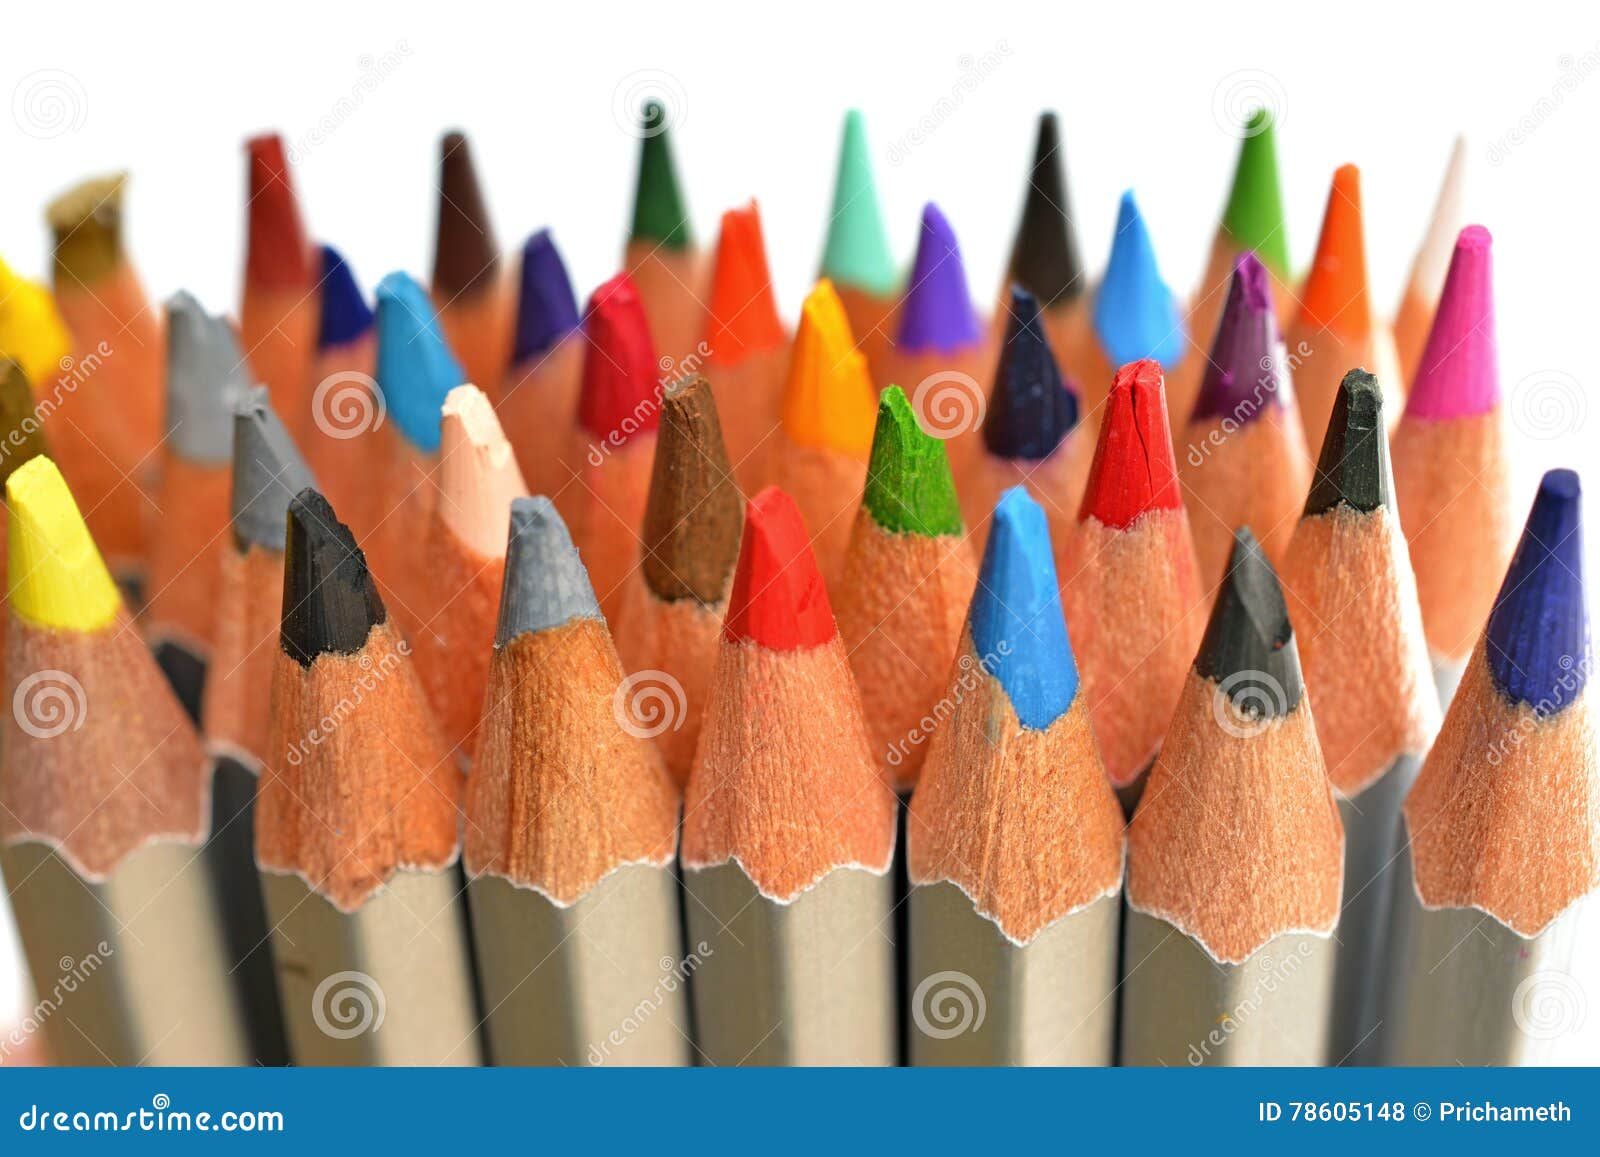 De potloden van de kleur die op het wit worden geïsoleerd?